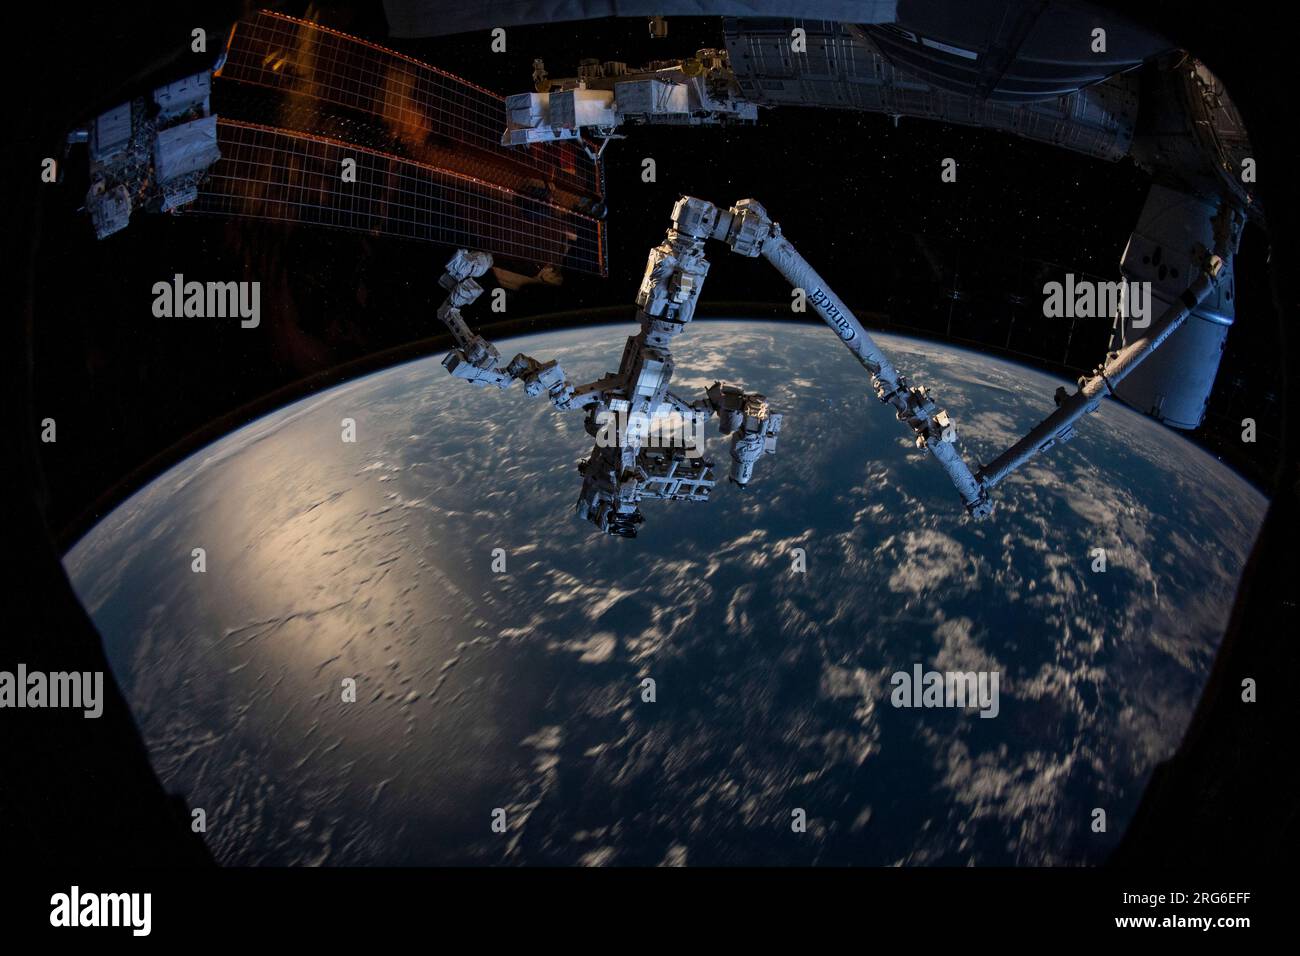 Il braccio robotico Canadarm2 con la mano robotica Dextre collegata, sporge dalla stazione spaziale Internazionale. Foto Stock